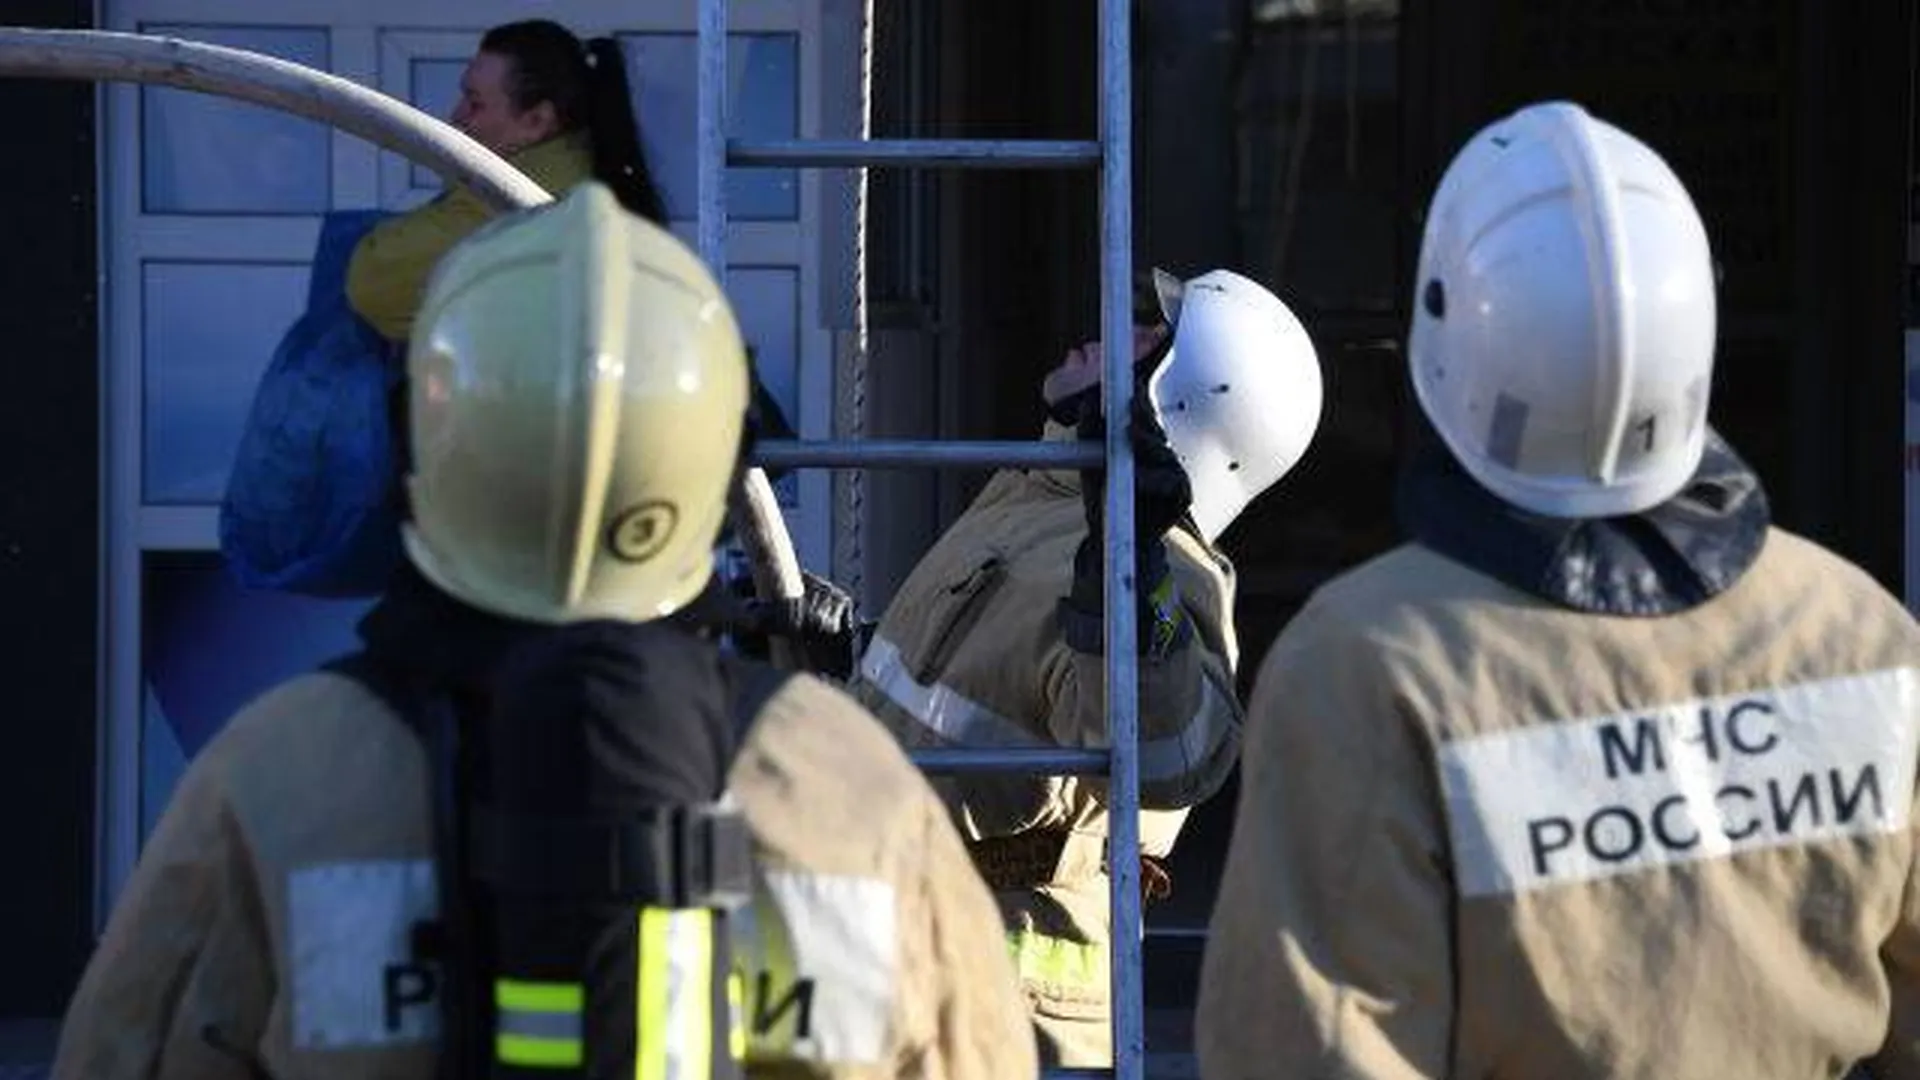 Названа причина, по которой пожарным в Красноярске могло не хватить кислорода на выход из горящего здания